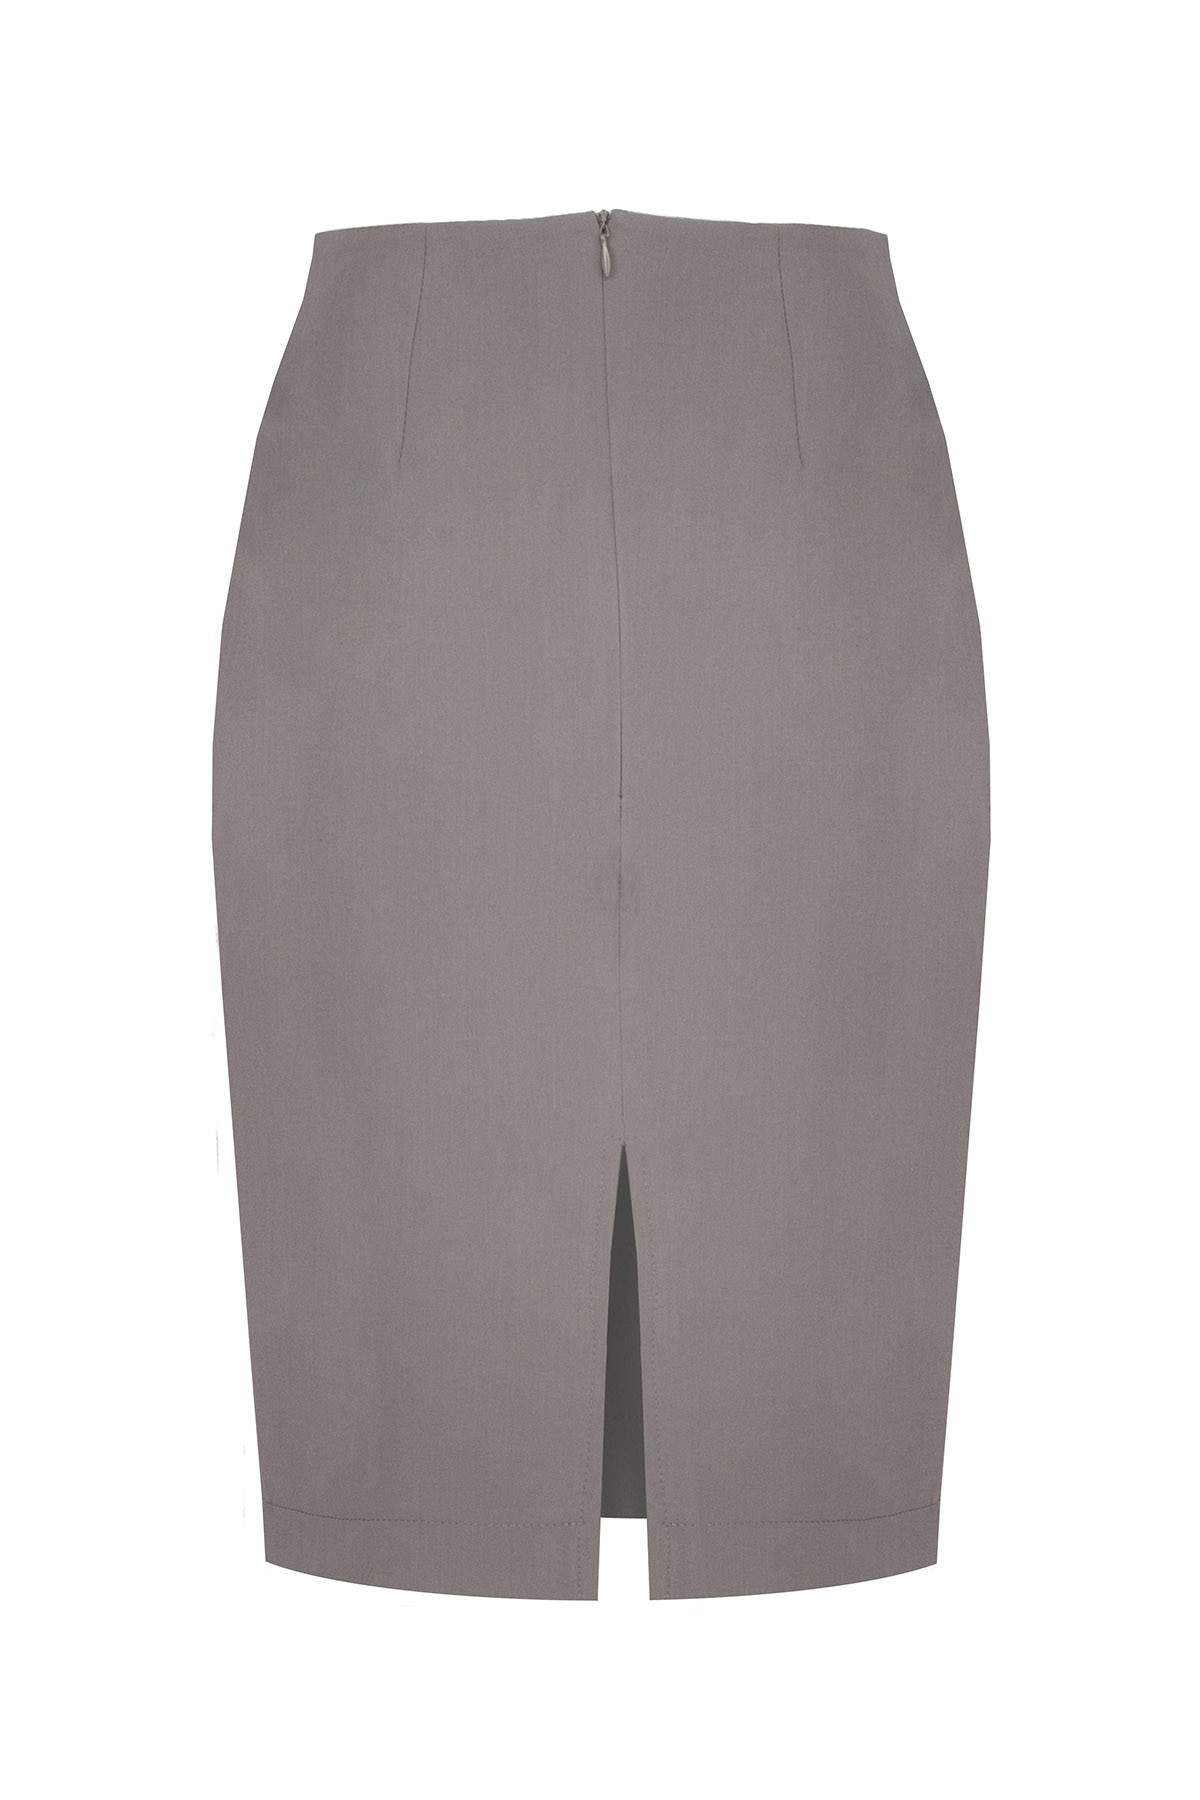 Dámská sukně M260 - Figl S šedá L